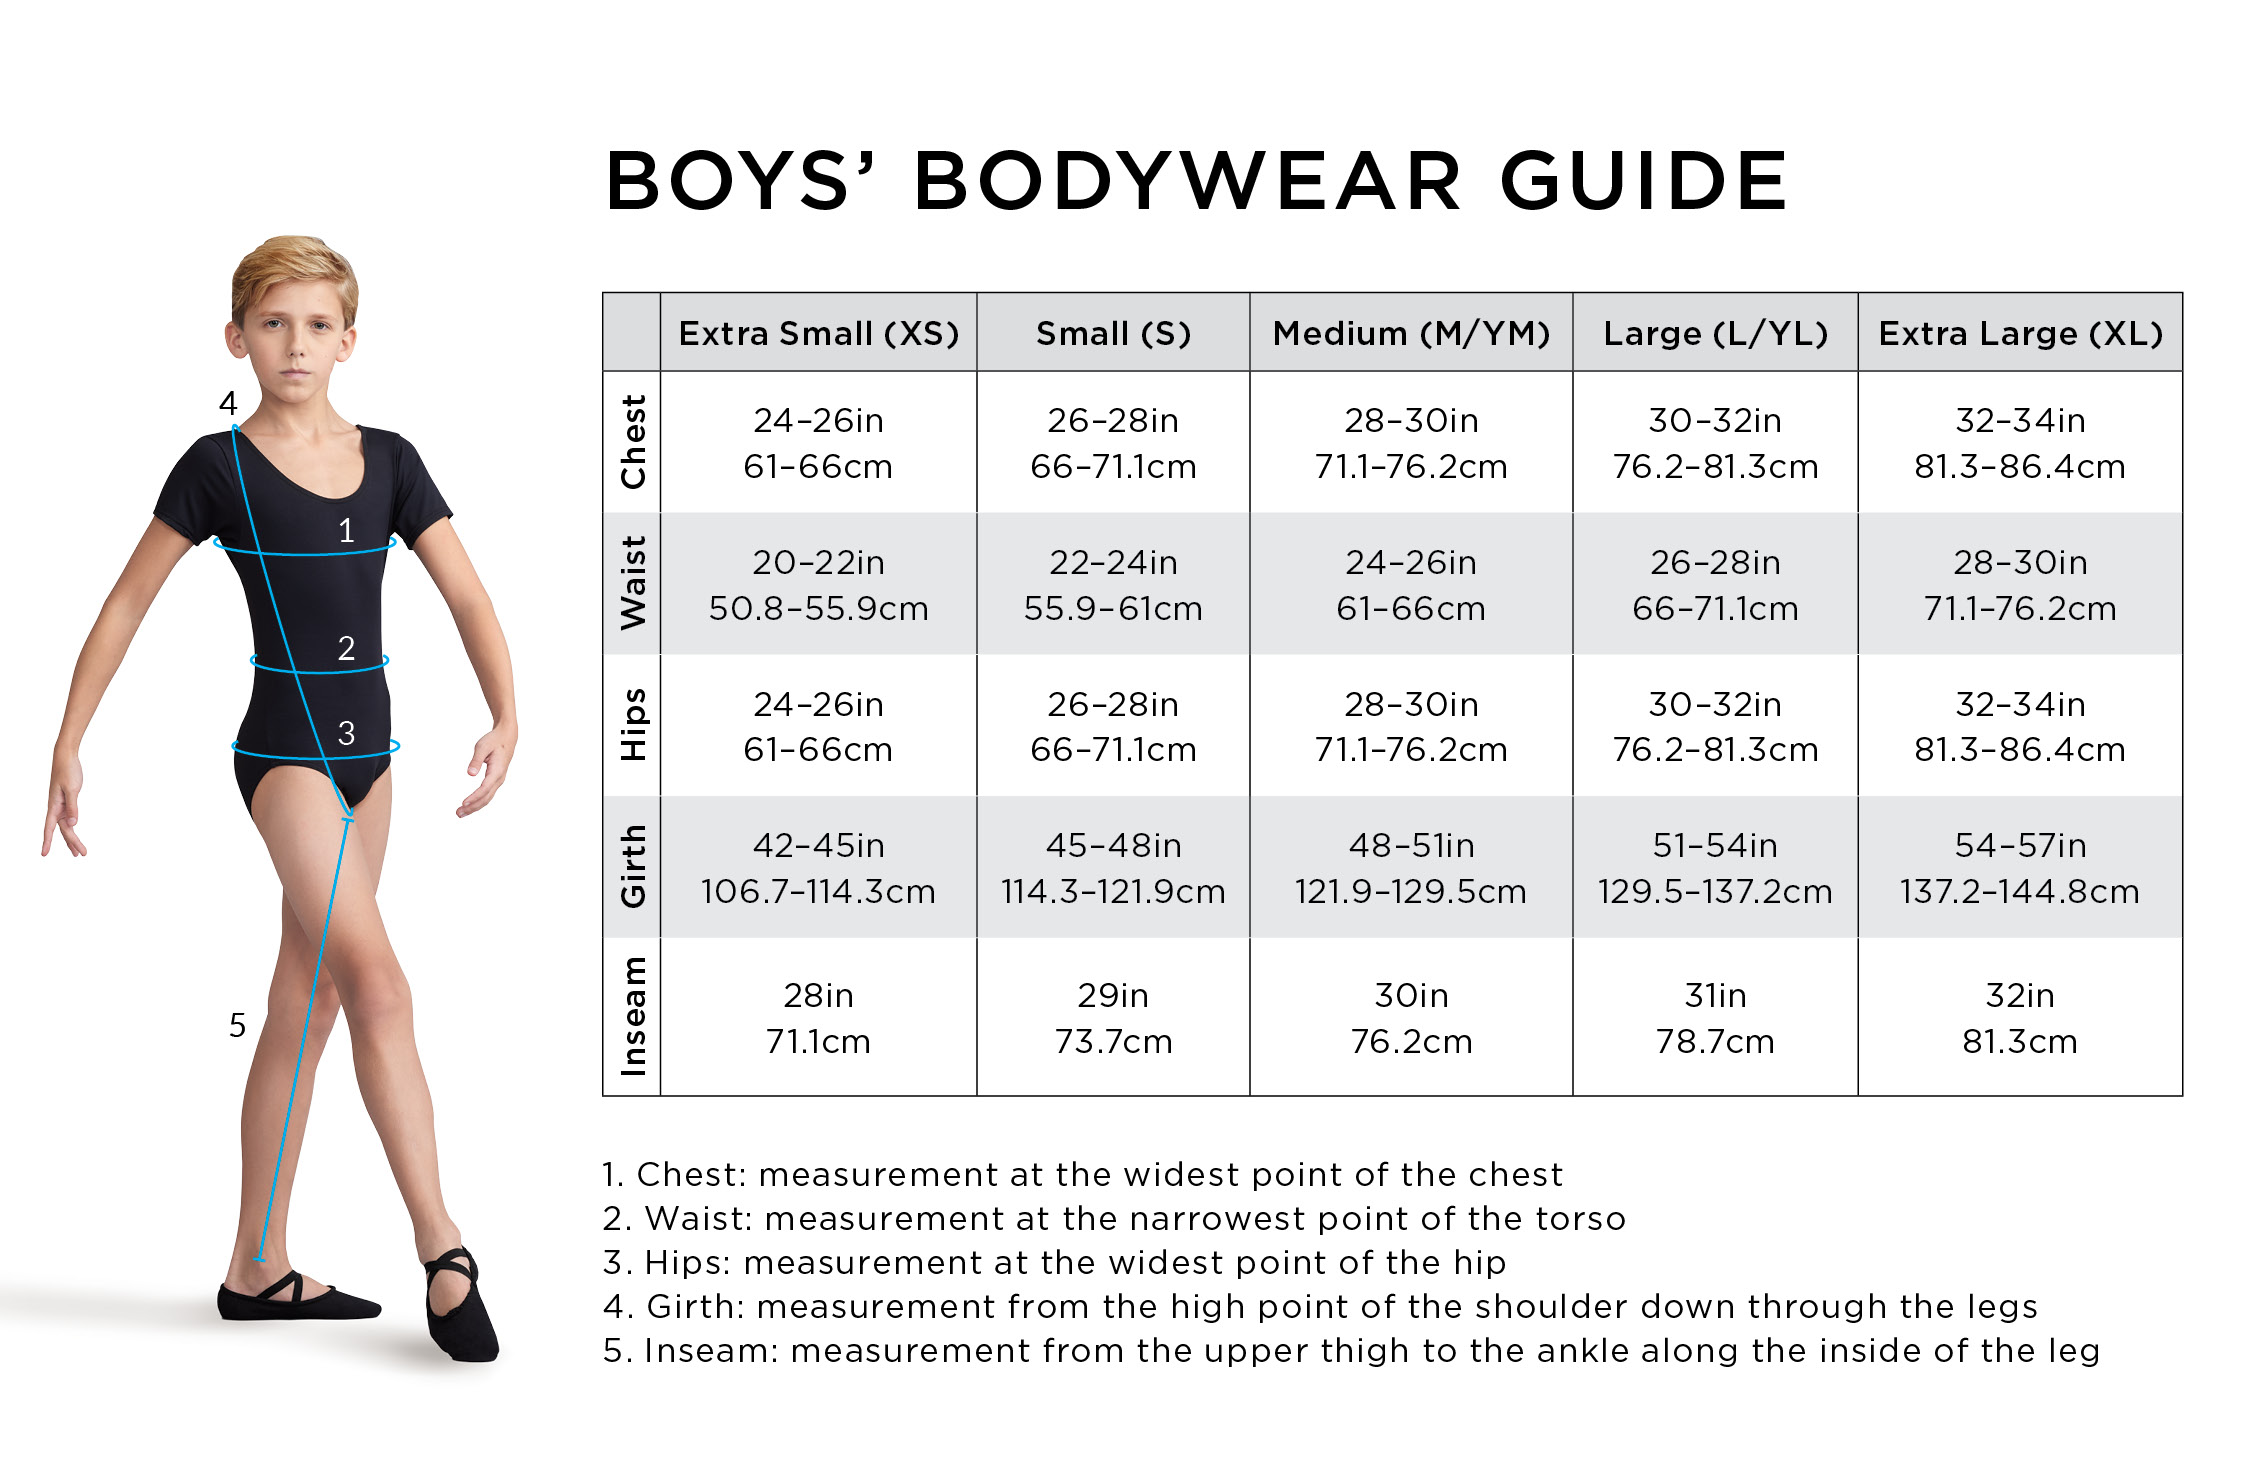 Boys Bodywear Guide